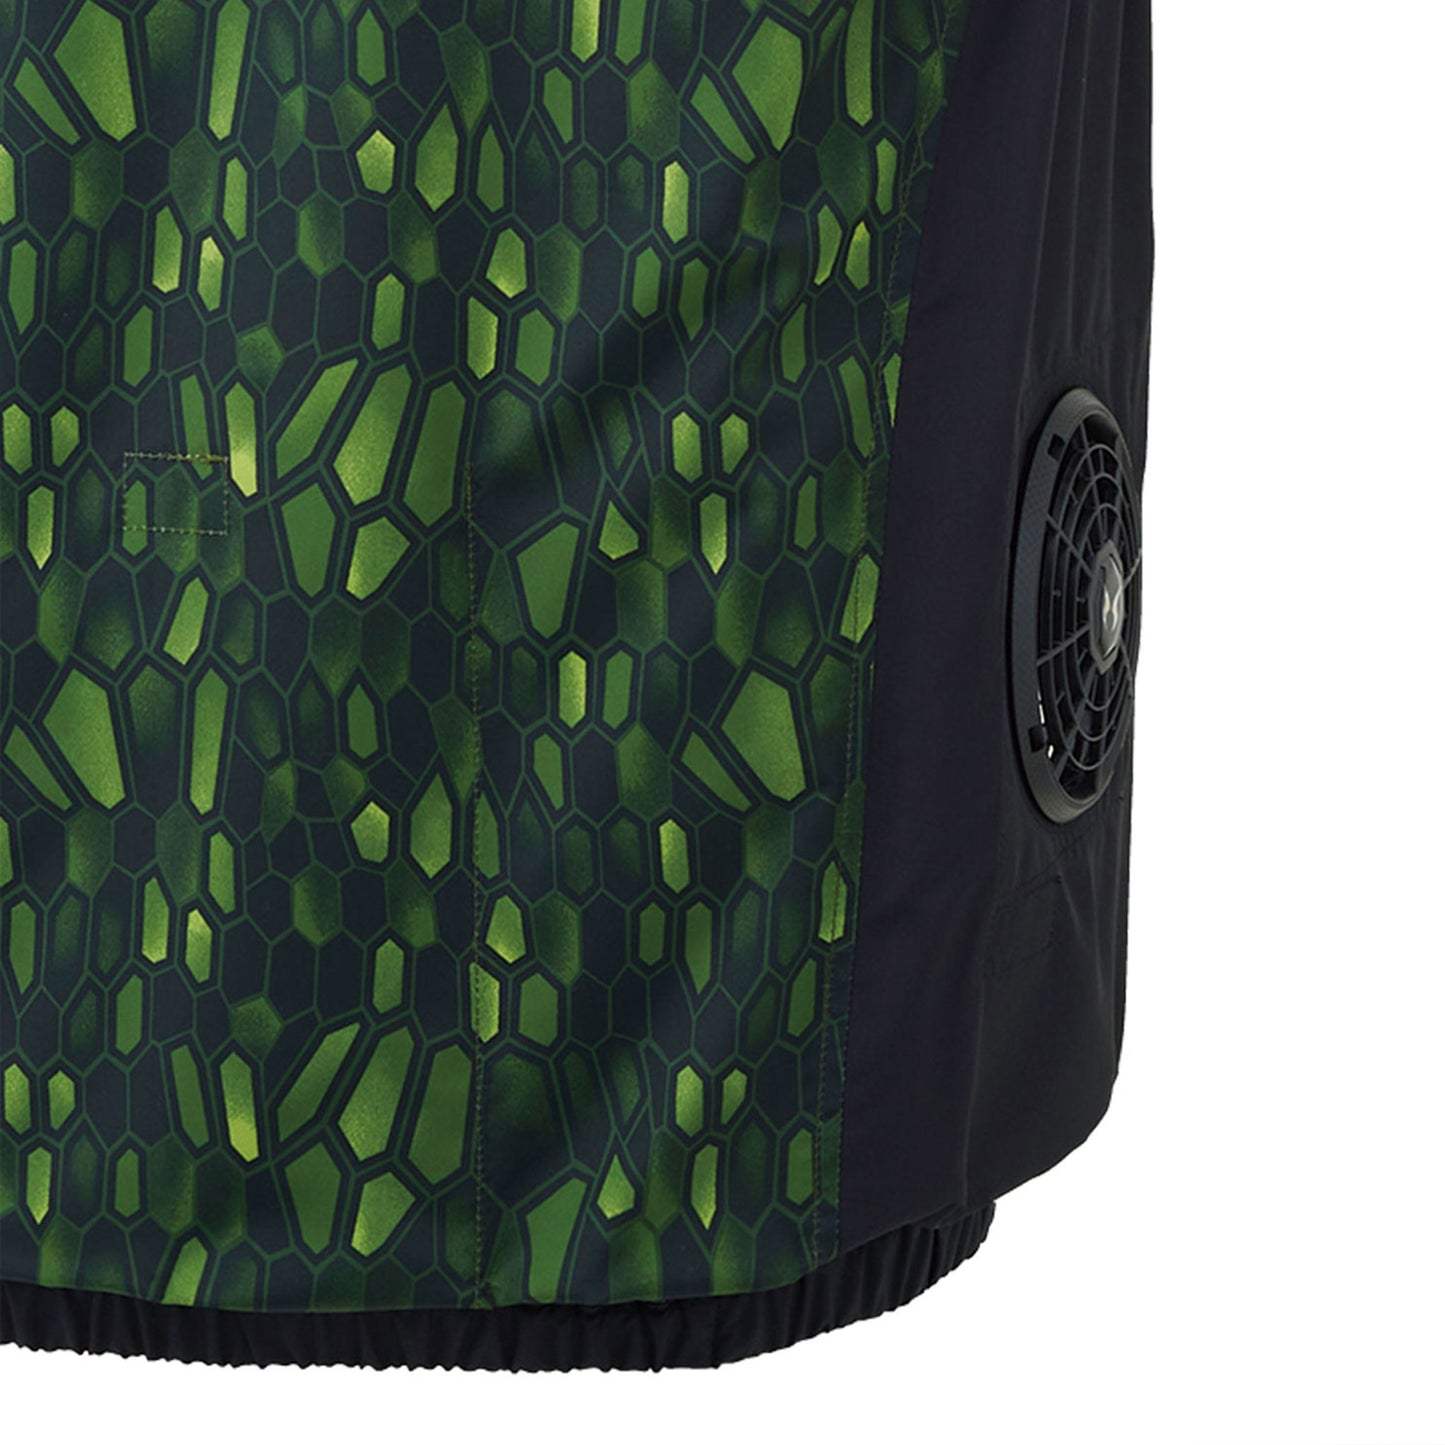 サンエス 空調風神服 オリジナルパターンでシャープな印象 フード付きでカジュアルさUP 【フード付ベスト】 KF92252